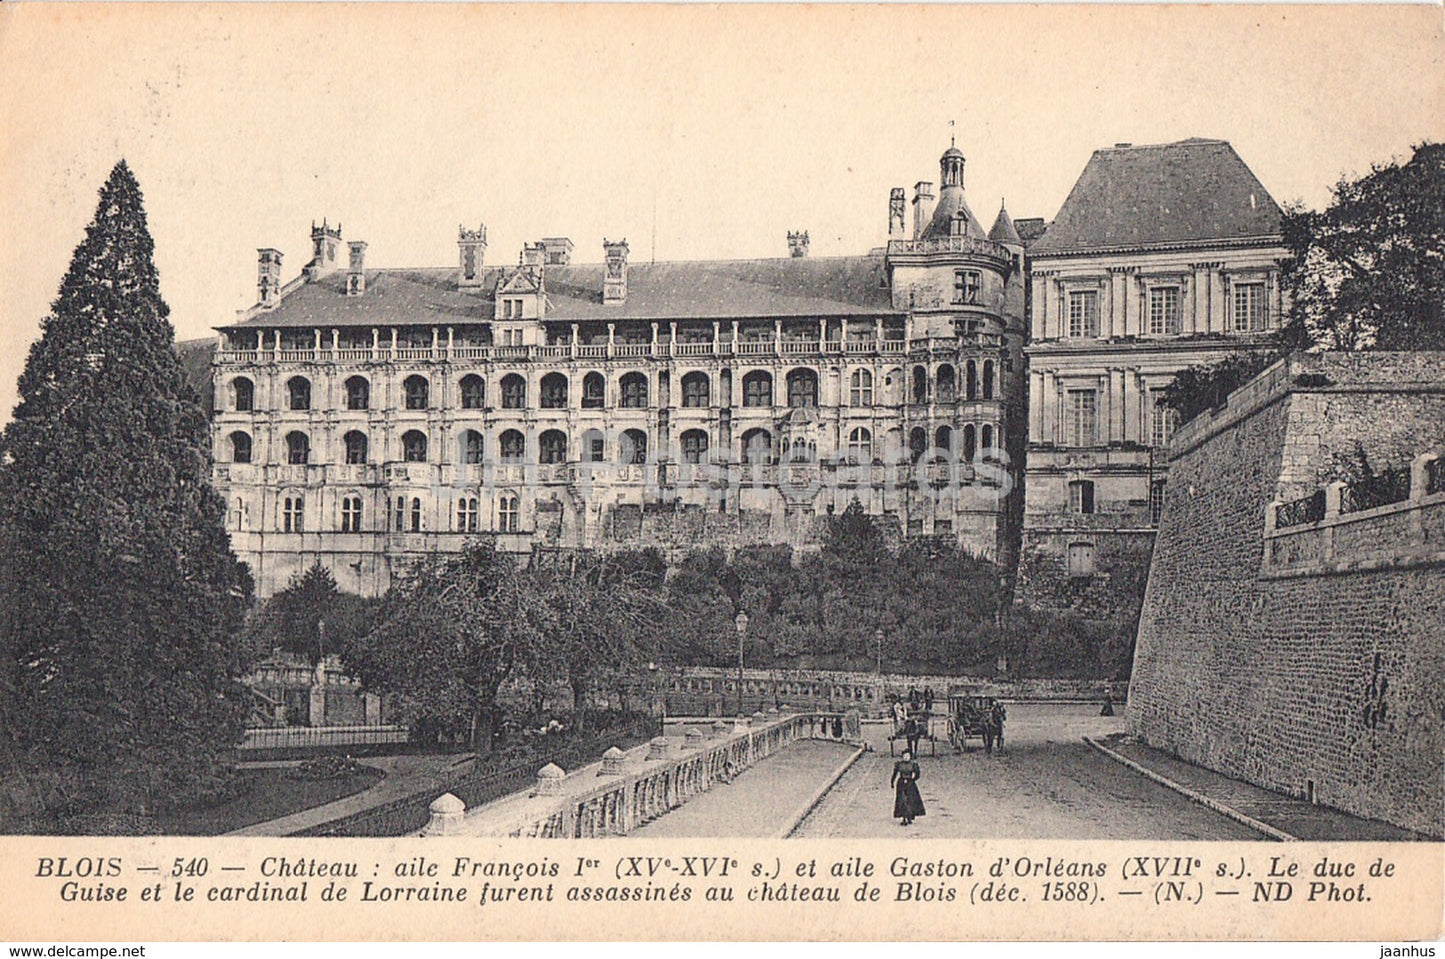 Blois - Chateau - Aile Francois Ier et aile Gaston d'Orleans - castle - 540 - old postcard - France - unused